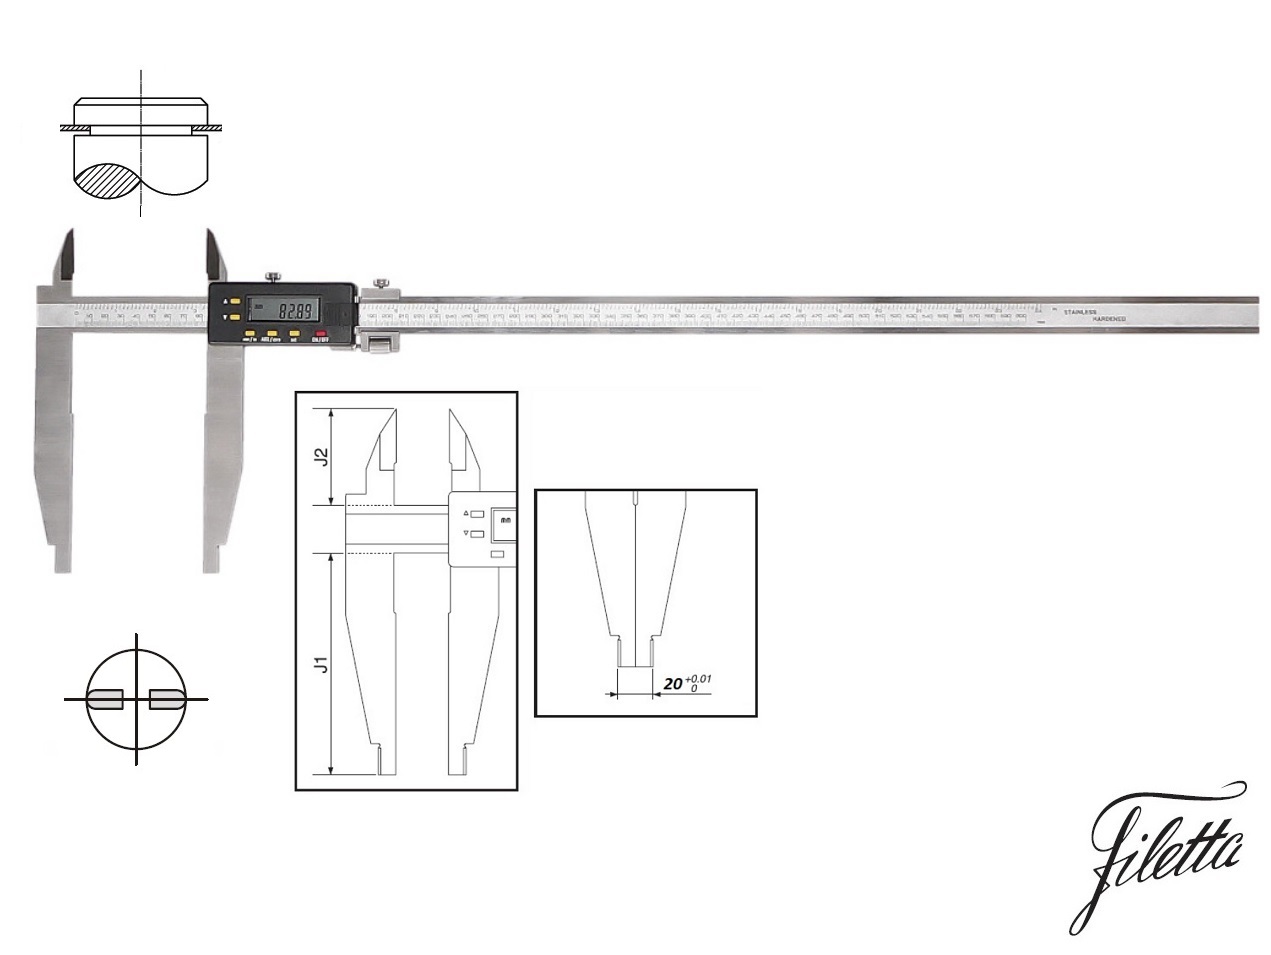 Digitální posuvné měřítko Filetta 0-1000 mm s měřicími nožíky pro vnější měření